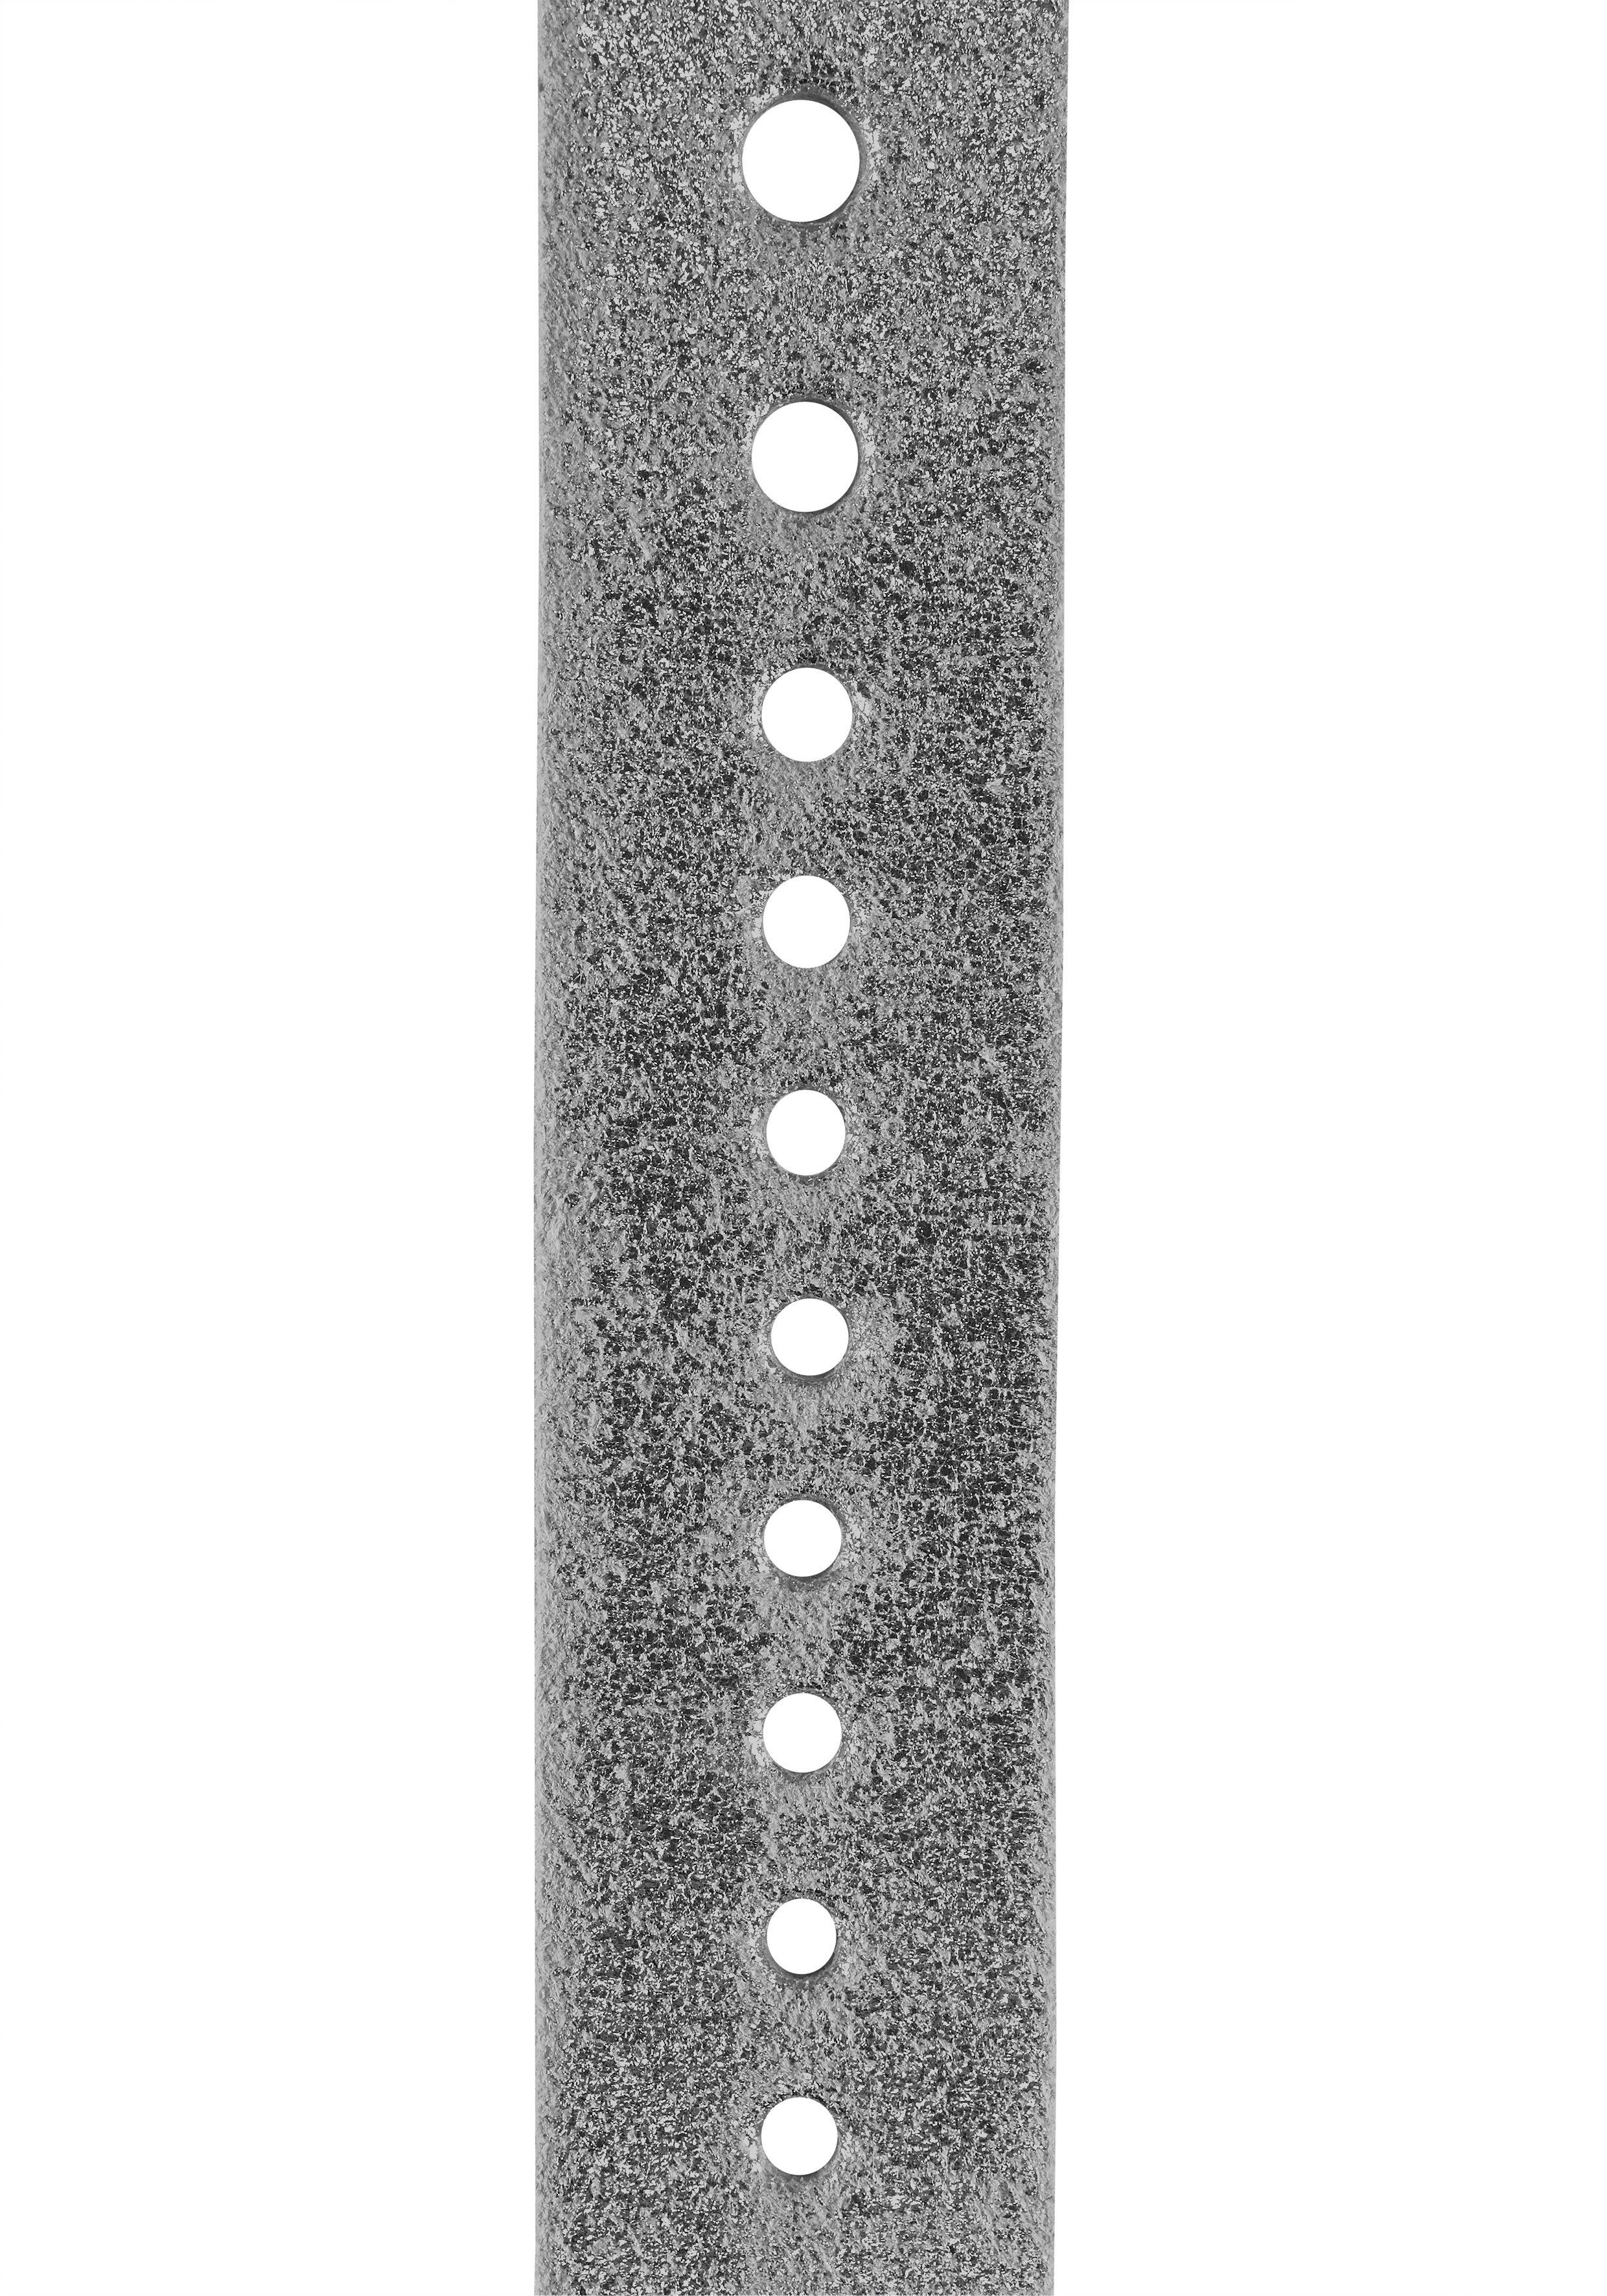 Damen Gürtel J.Jayz Ledergürtel Glänzende Oberfläche, metallischer Vintage-Look, mit Lochausstanzungen rundum